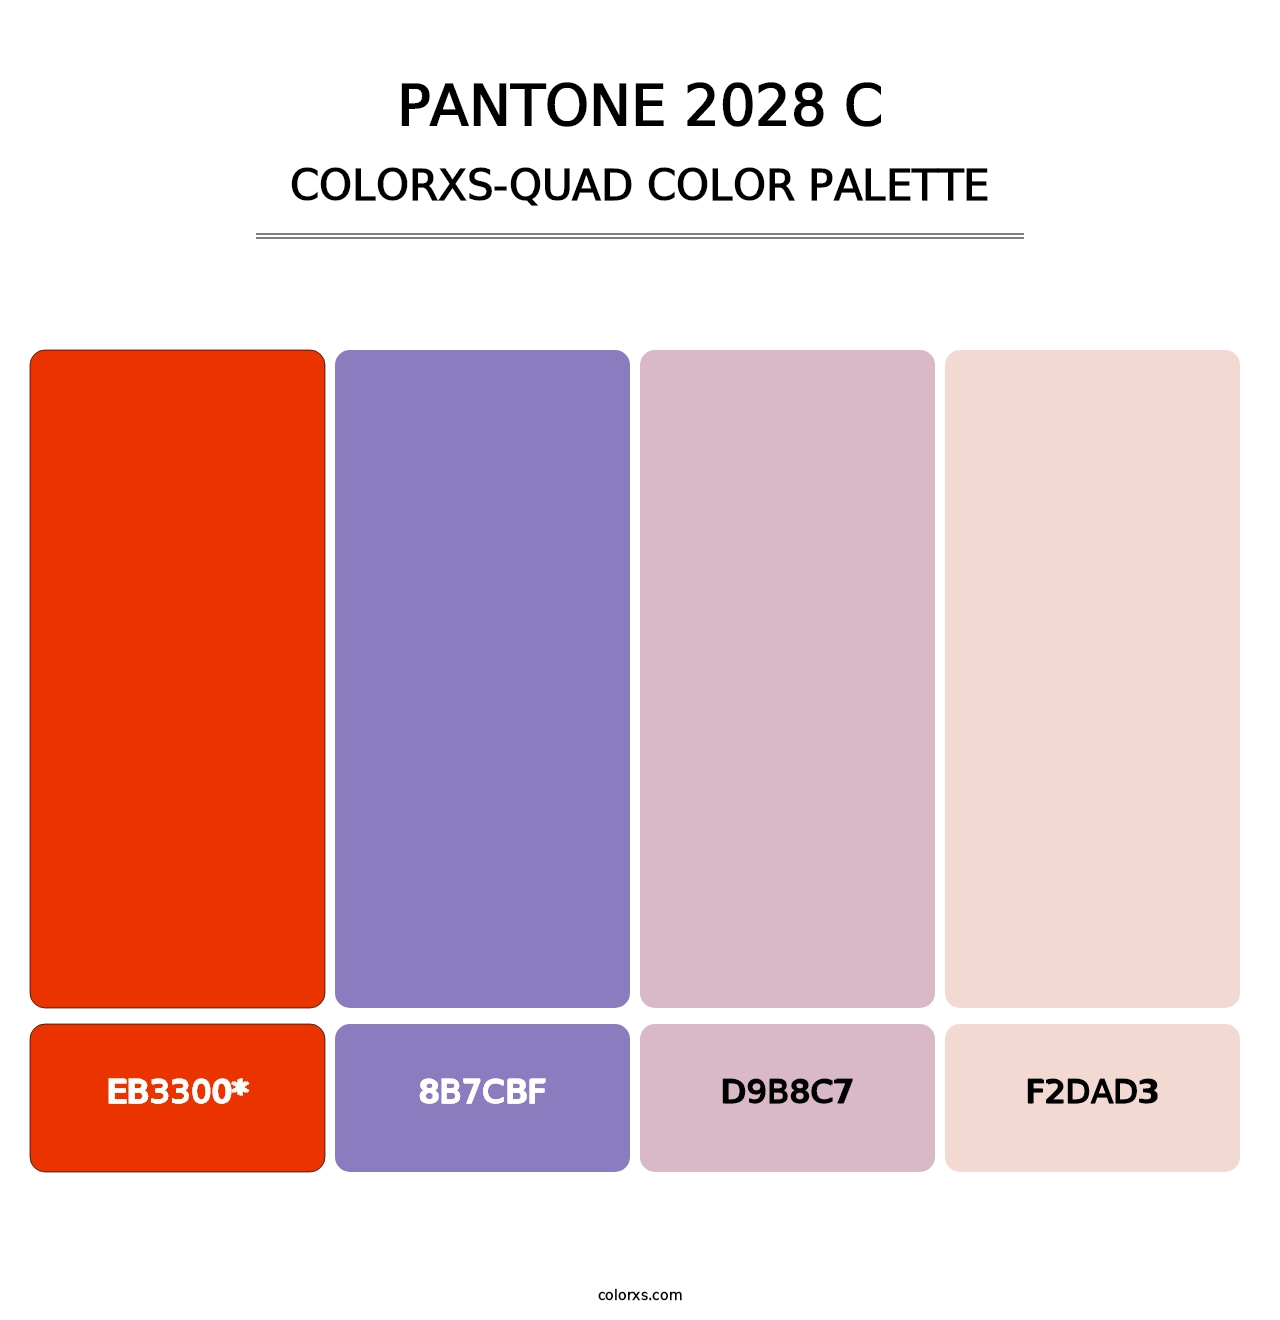 PANTONE 2028 C - Colorxs Quad Palette